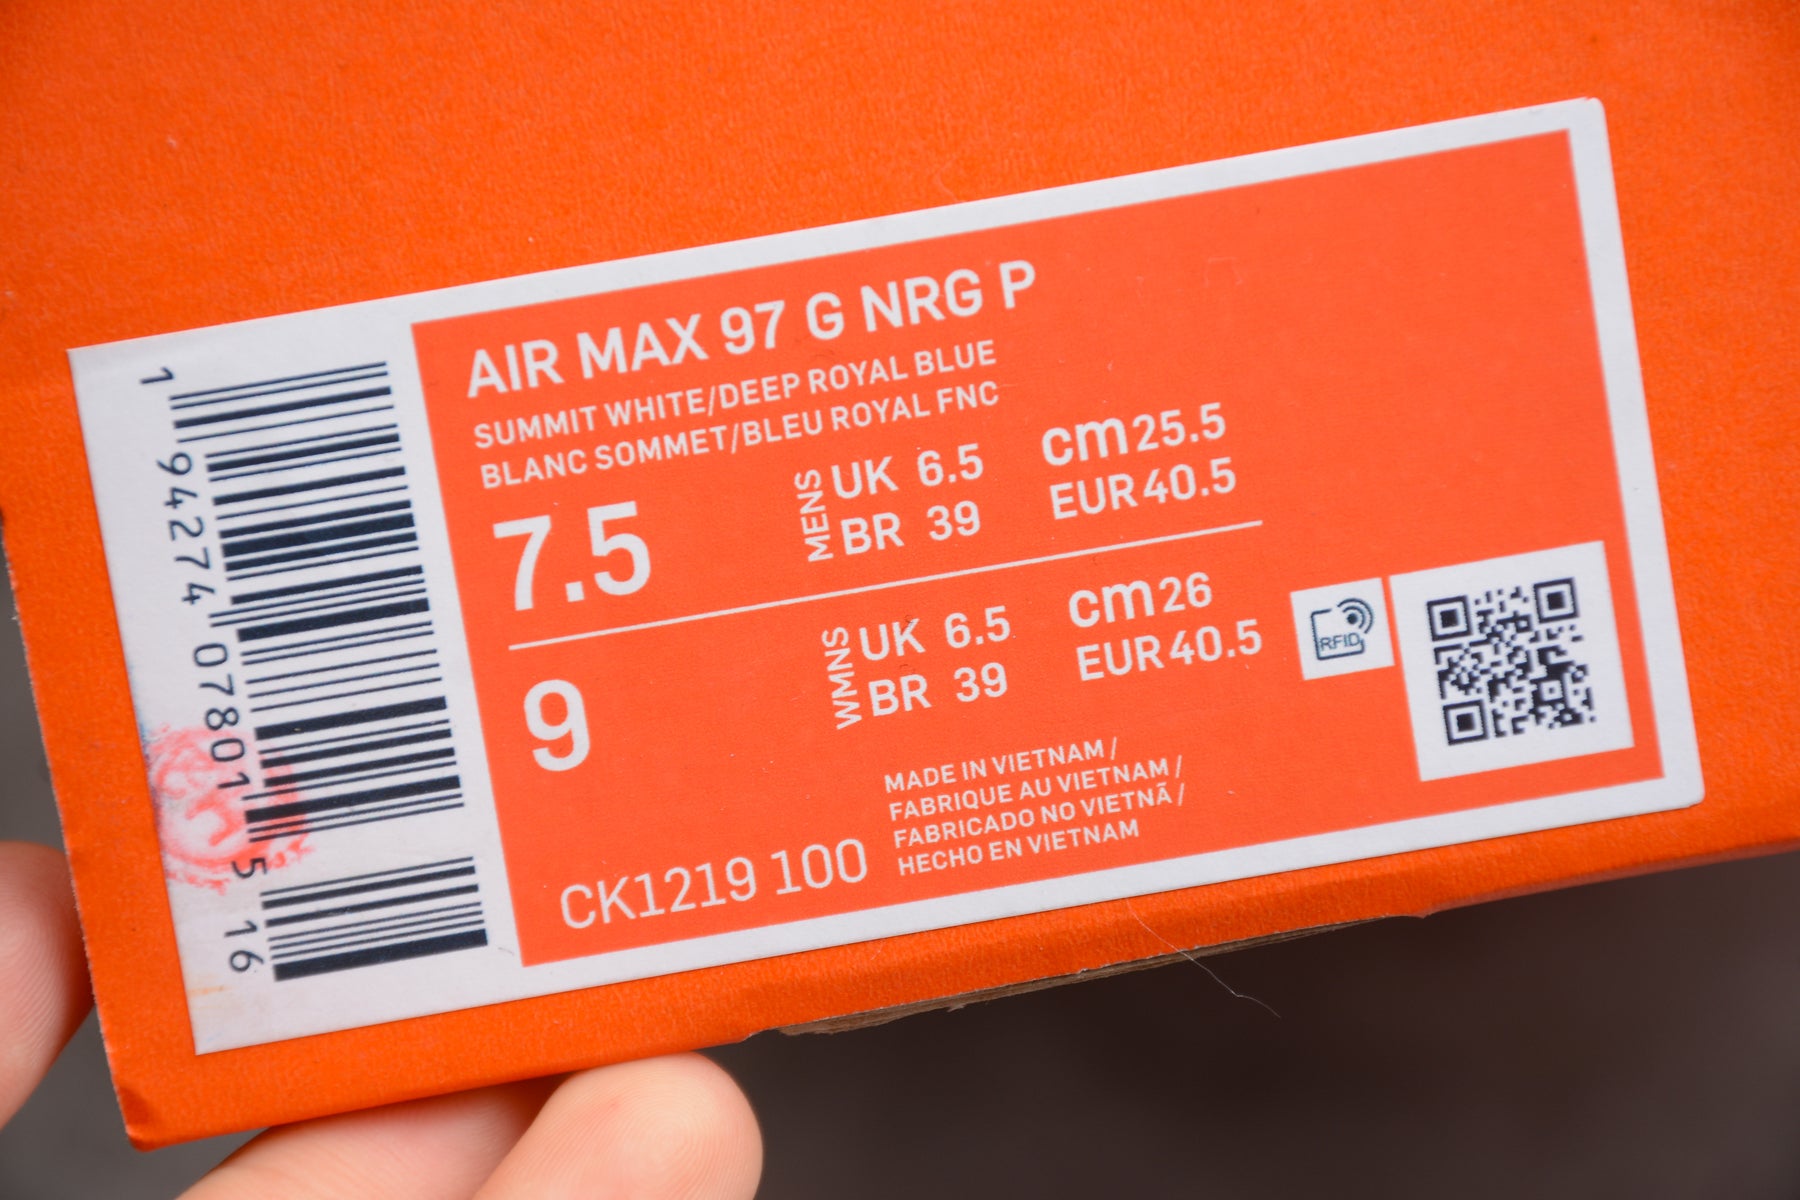 NikeMens Air Max 97 AM97 - Tie Dye